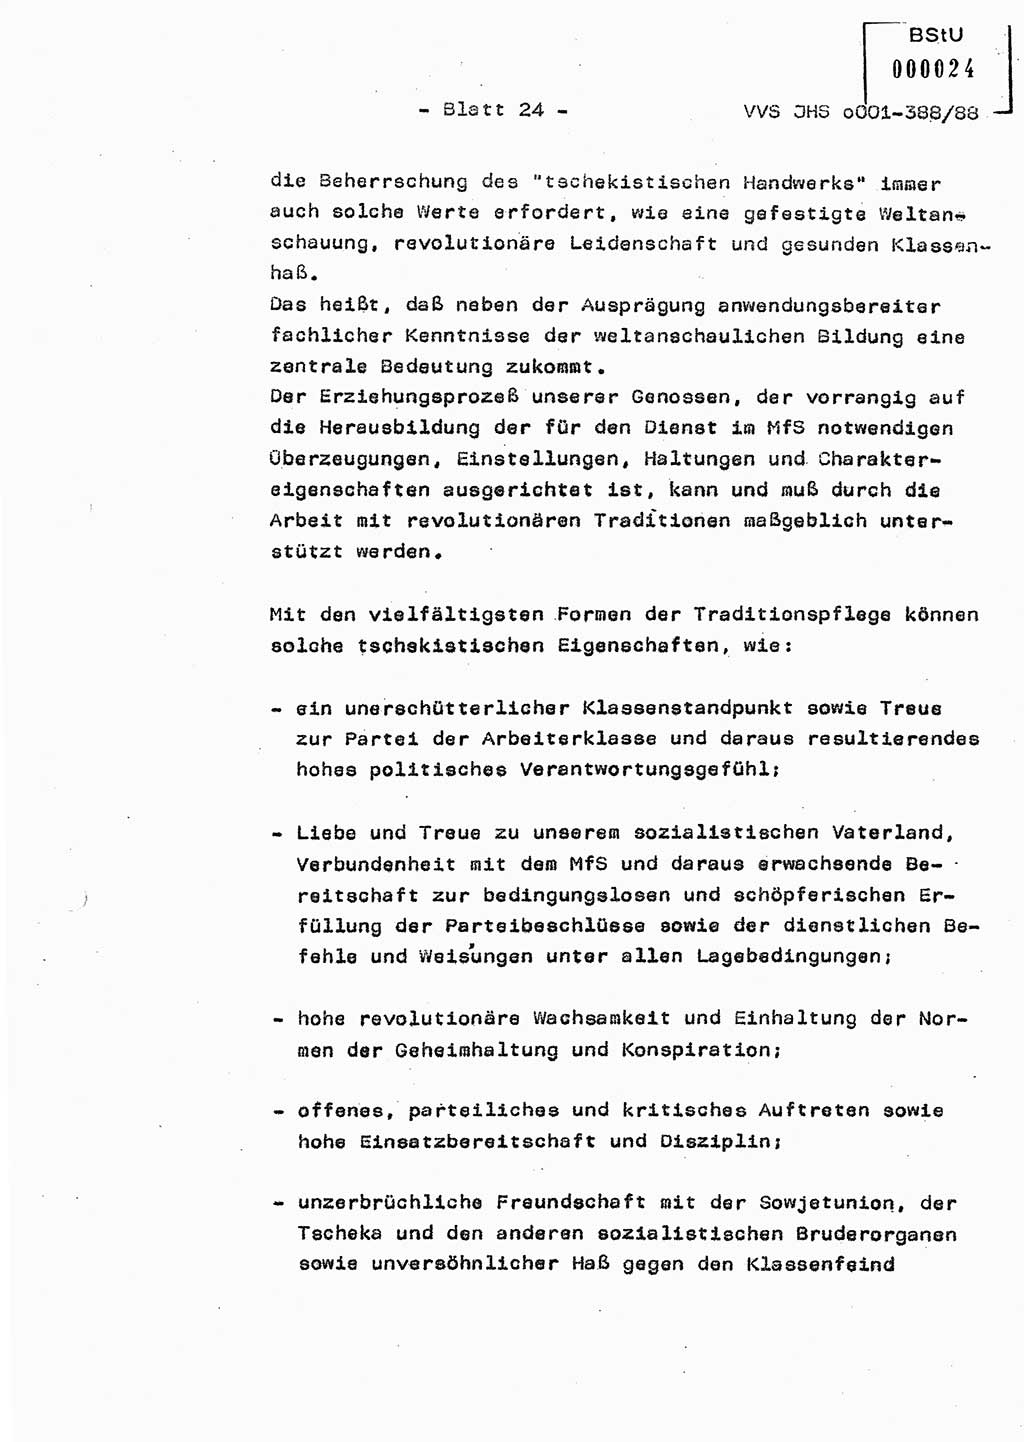 Diplomarbeit Hauptmann Heinz Brixel (Abt. ⅩⅣ), Ministerium für Staatssicherheit (MfS) [Deutsche Demokratische Republik (DDR)], Juristische Hochschule (JHS), Vertrauliche Verschlußsache (VVS) o001-388/88, Potsdam 1988, Blatt 24 (Dipl.-Arb. MfS DDR JHS VVS o001-388/88 1988, Bl. 24)